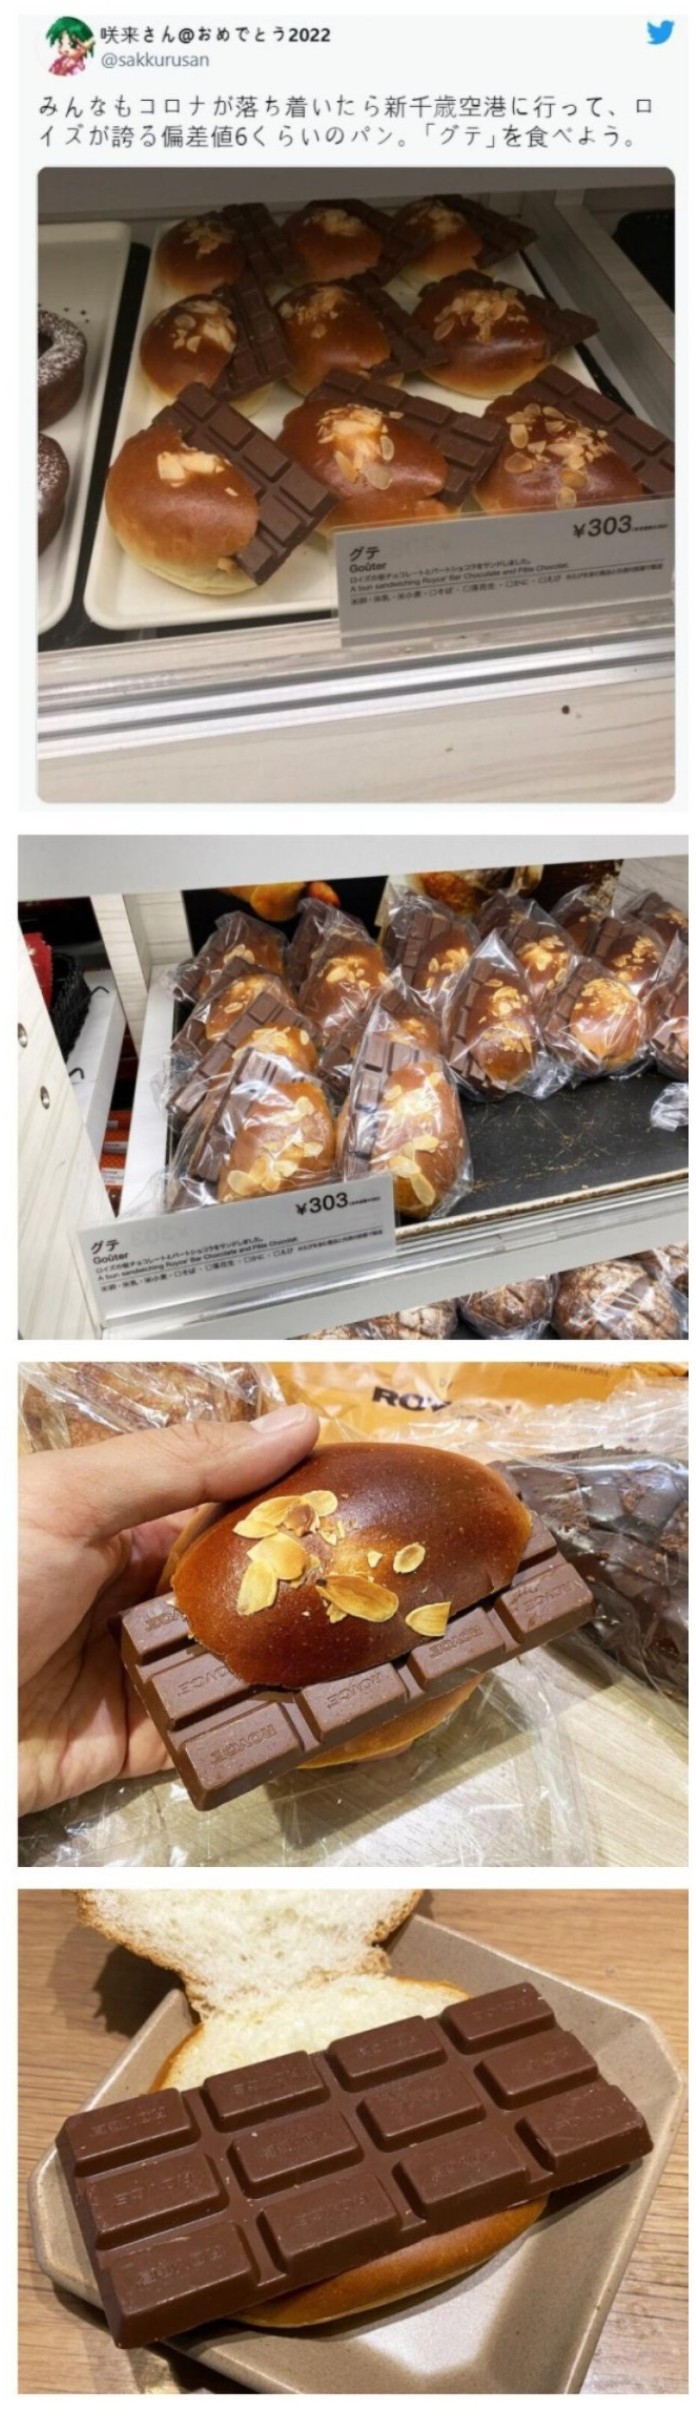 썸네일-특이점이 와버린 일본 초코빵-이미지